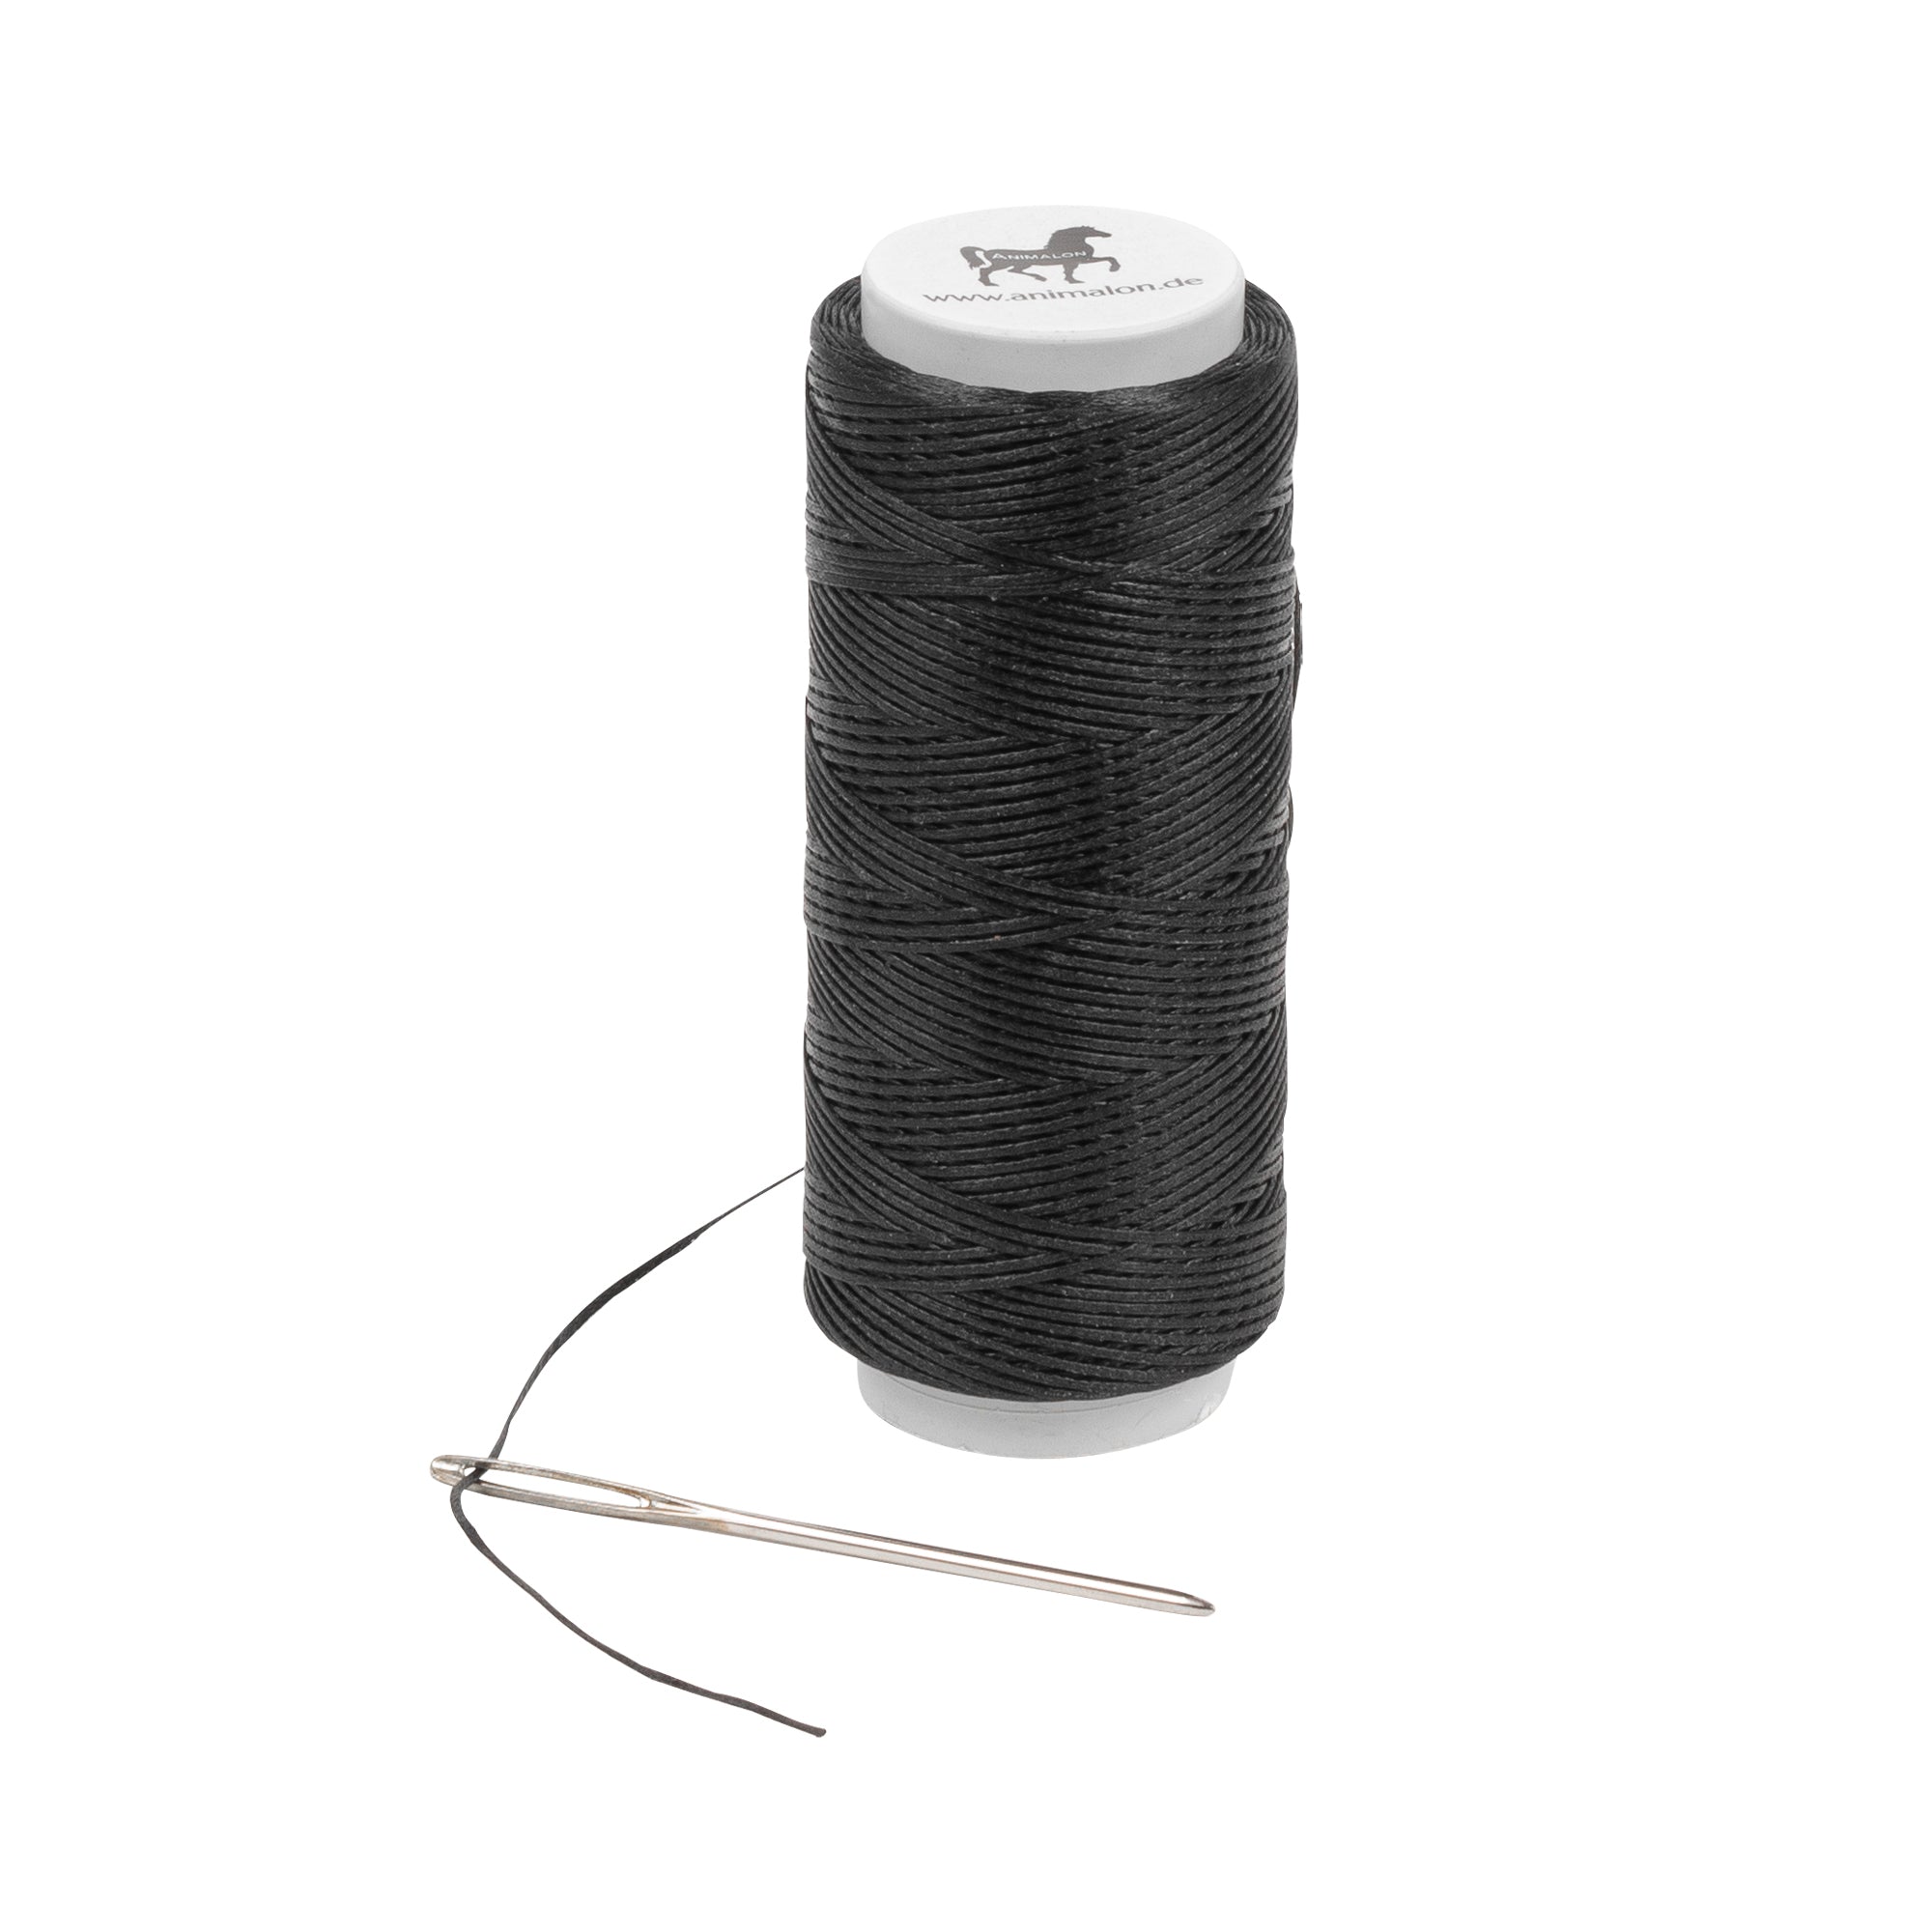 Waxed sewing thread